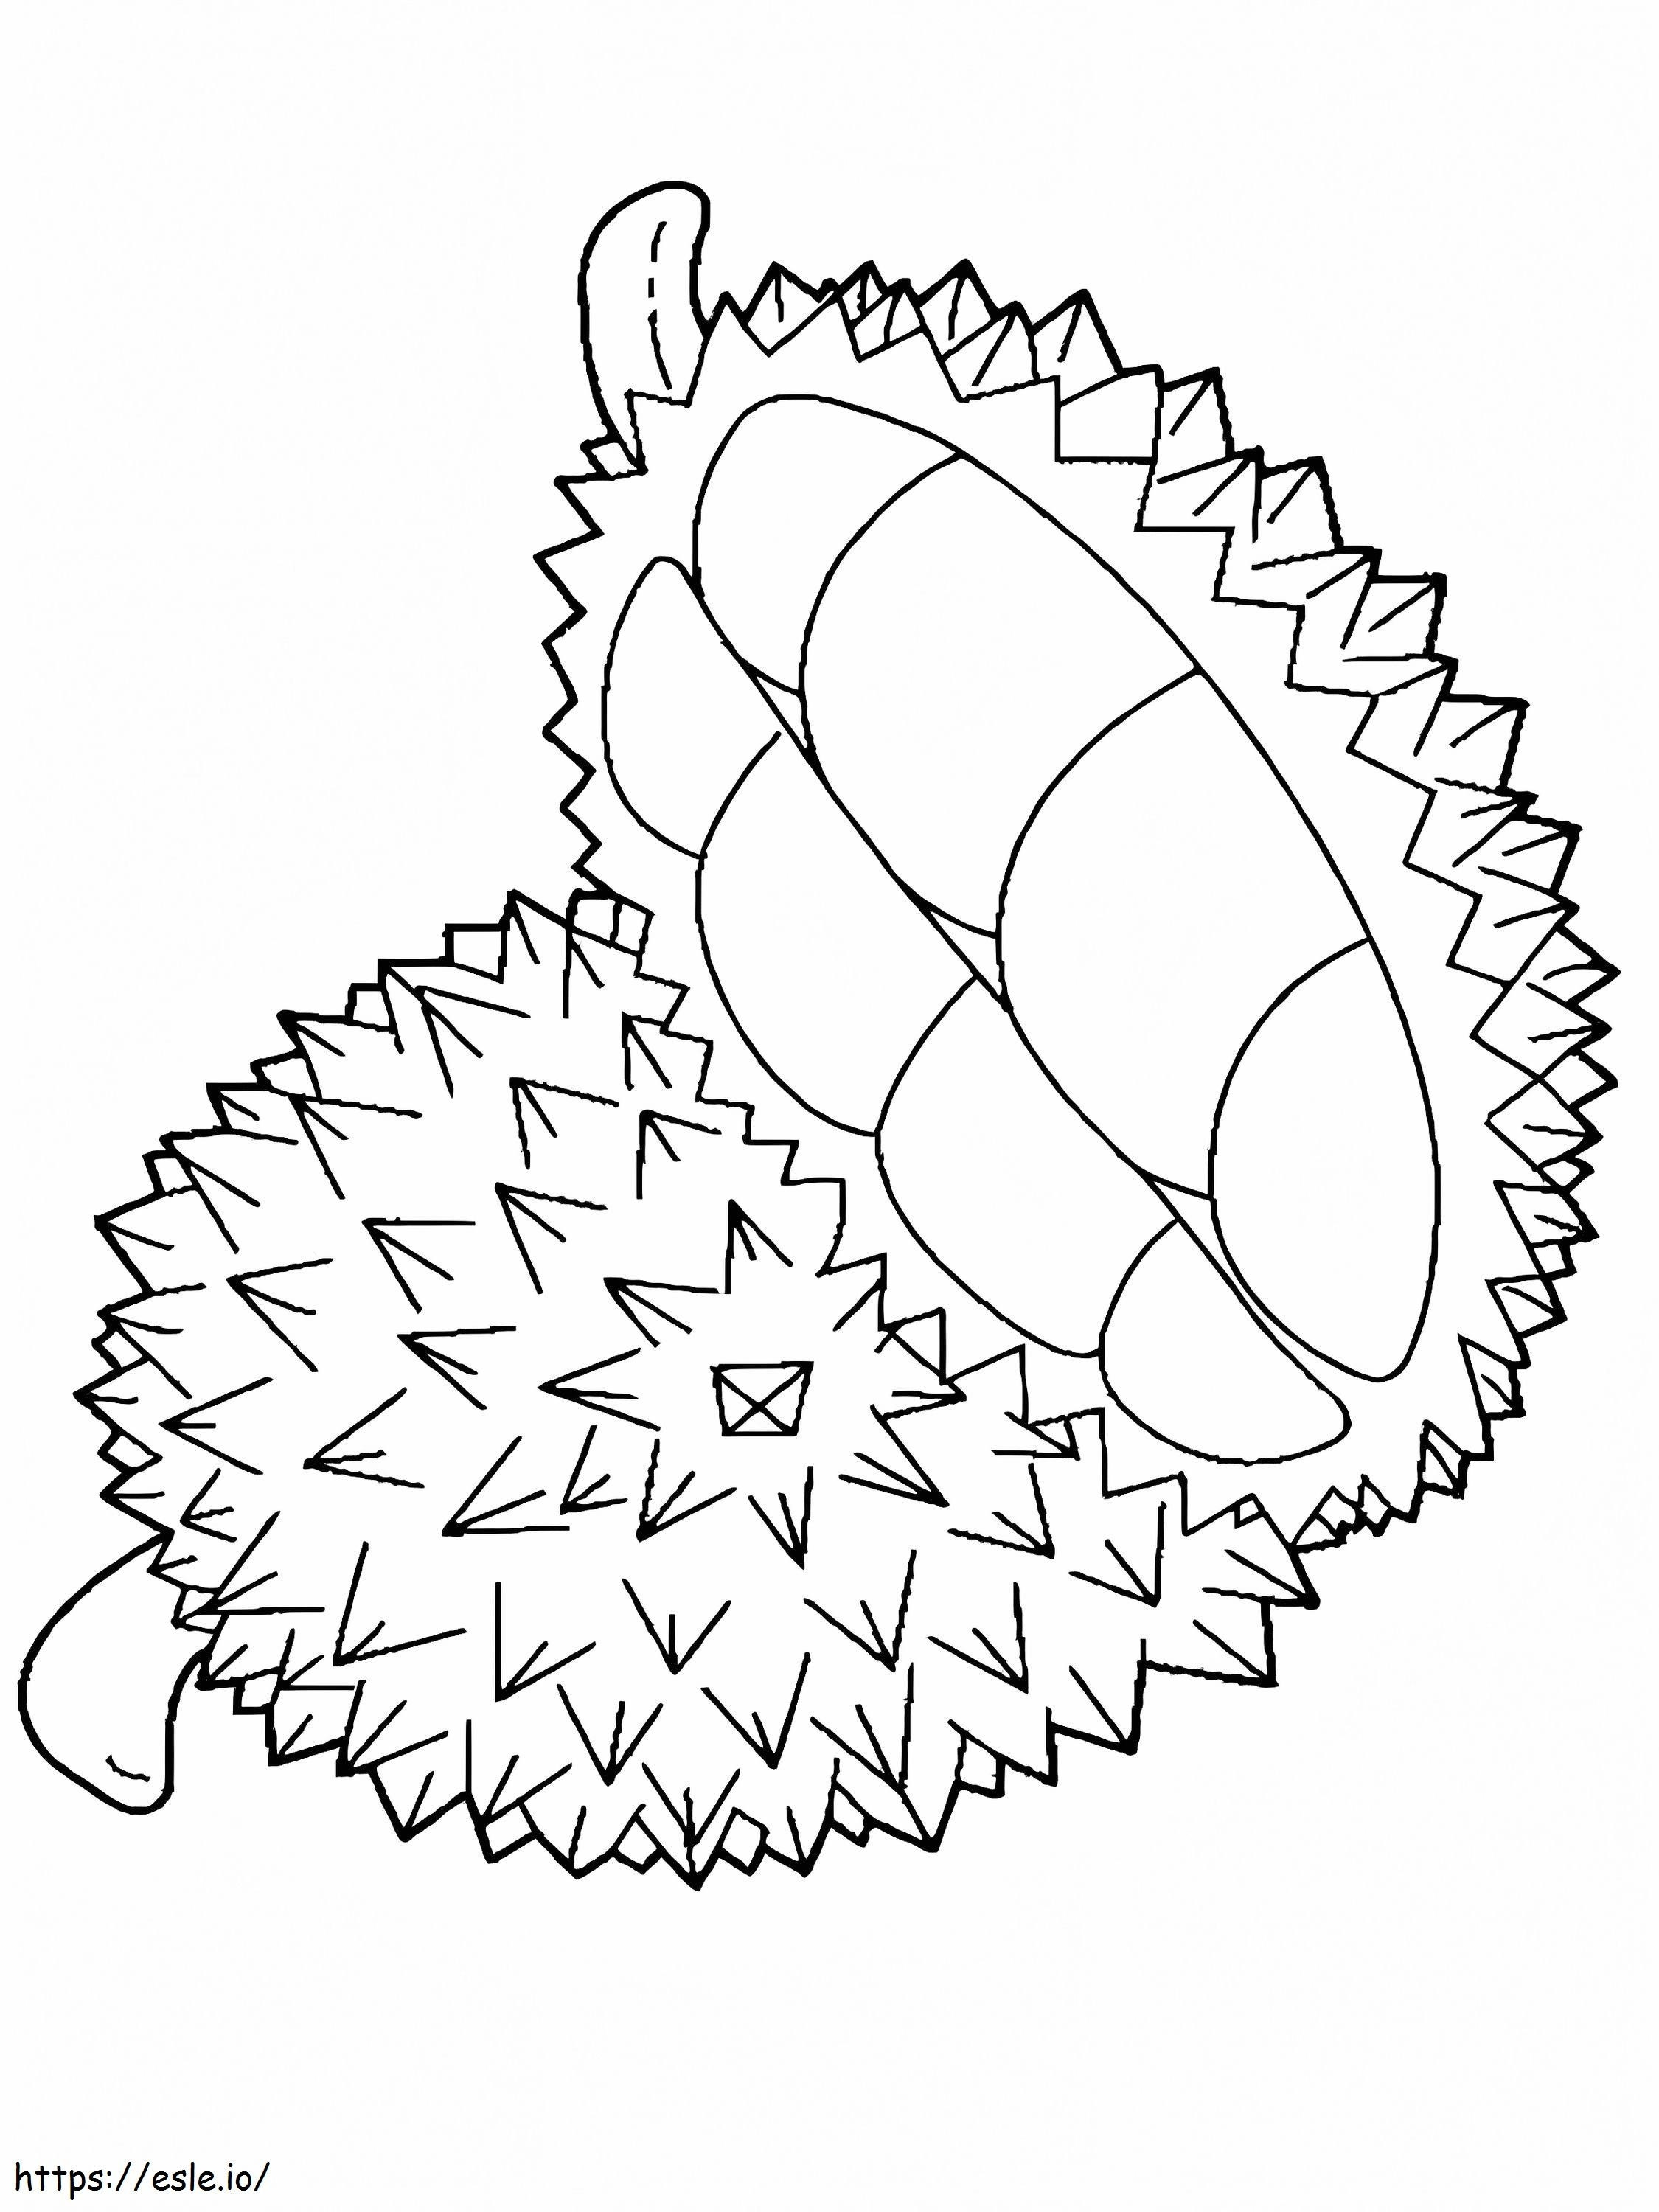 Temel Bir Durian ve Yarım Durian boyama